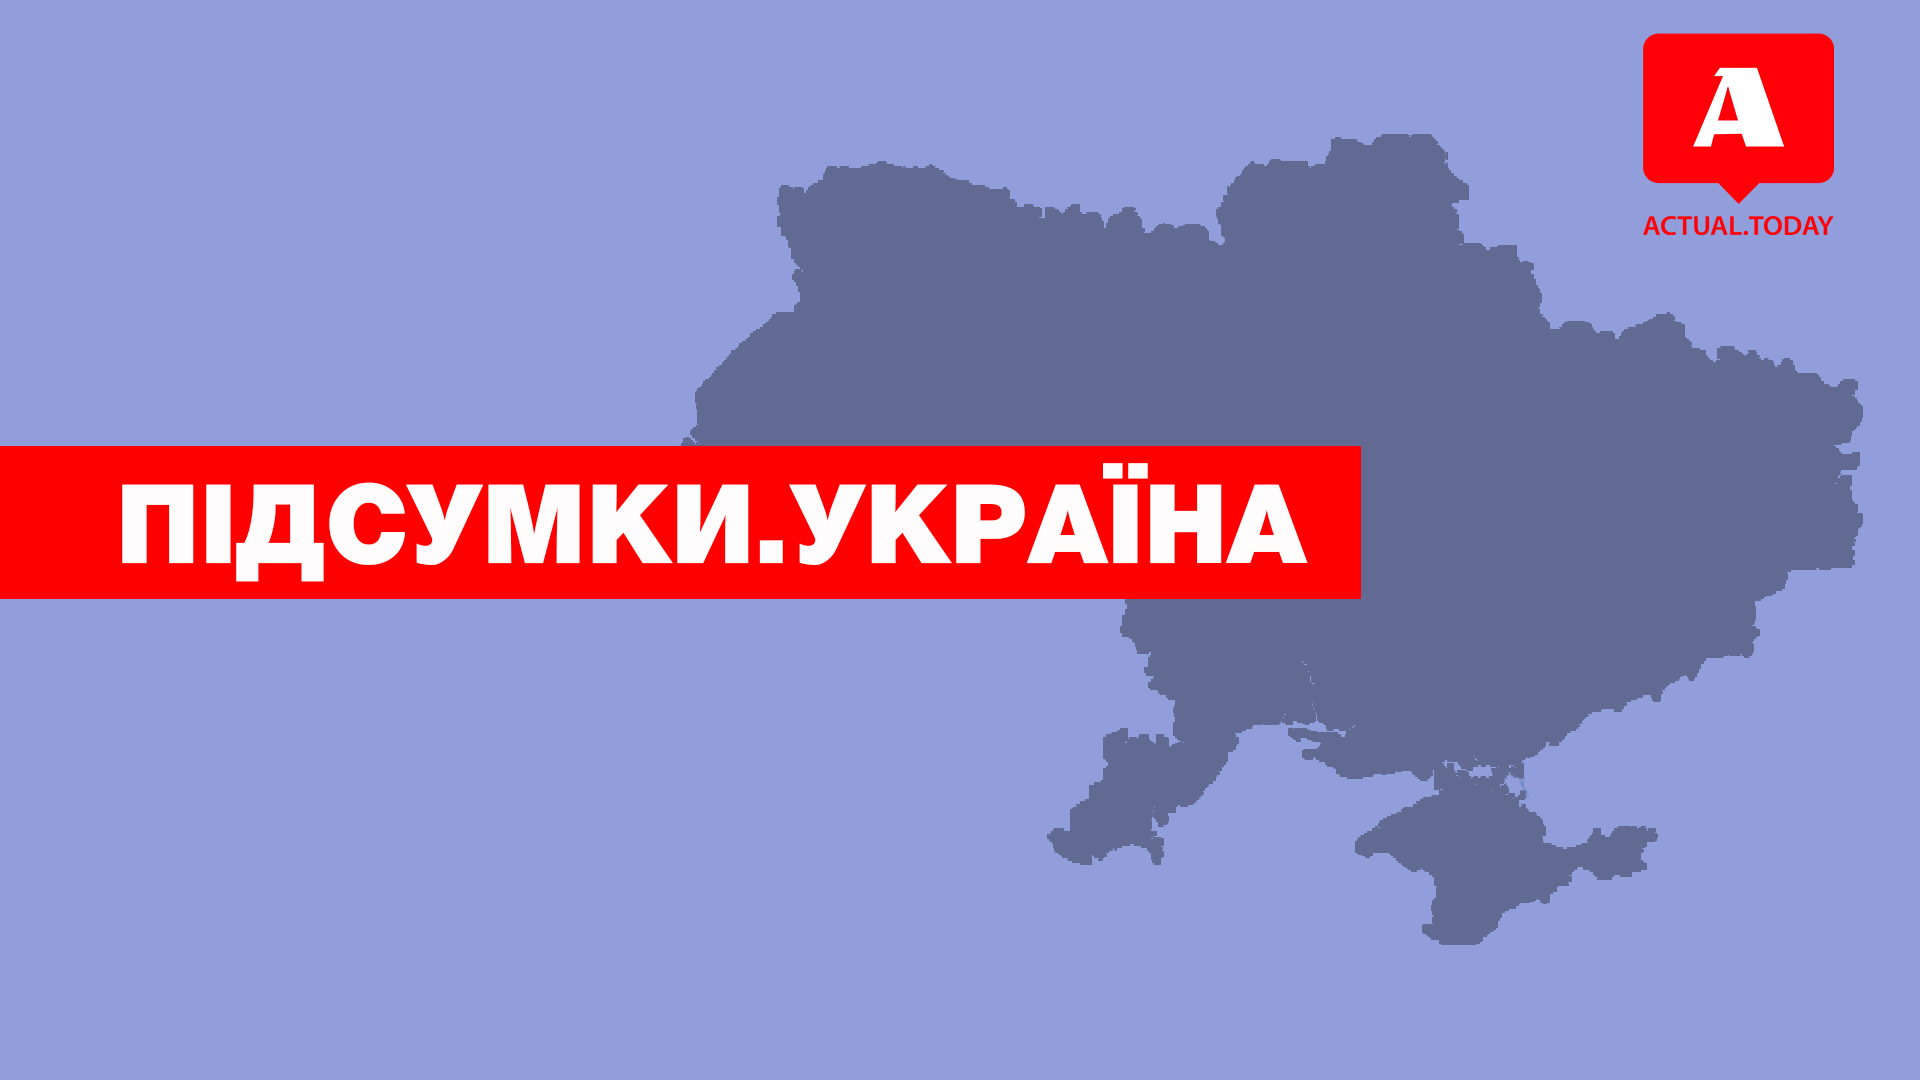 Требования Тимошенко, охота на националистов и новый состав дорожного покрытия – главные новости понедельника за 60 секунд